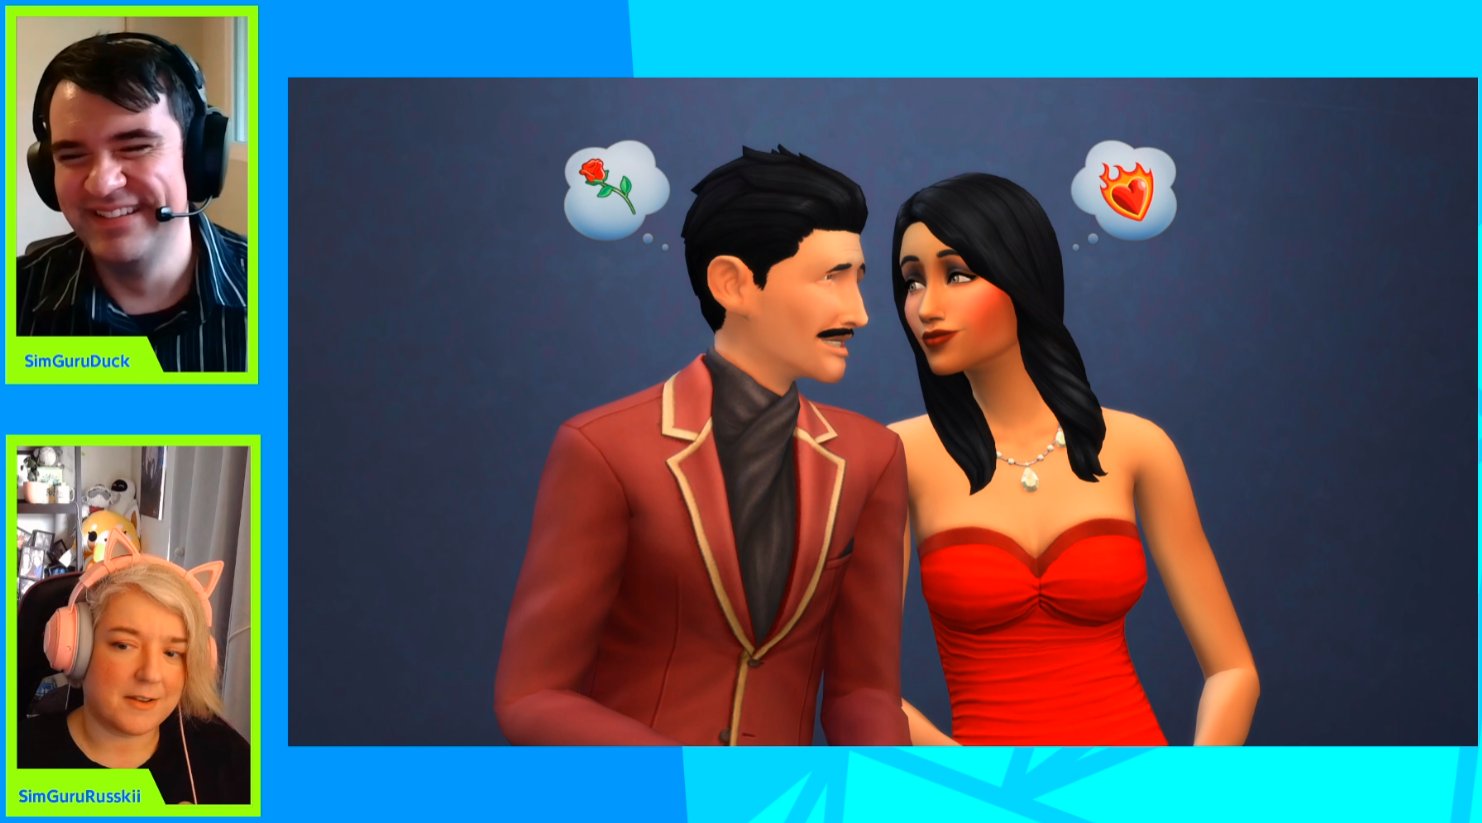 Sims 4 1.83 Power Couple Scenario Coming